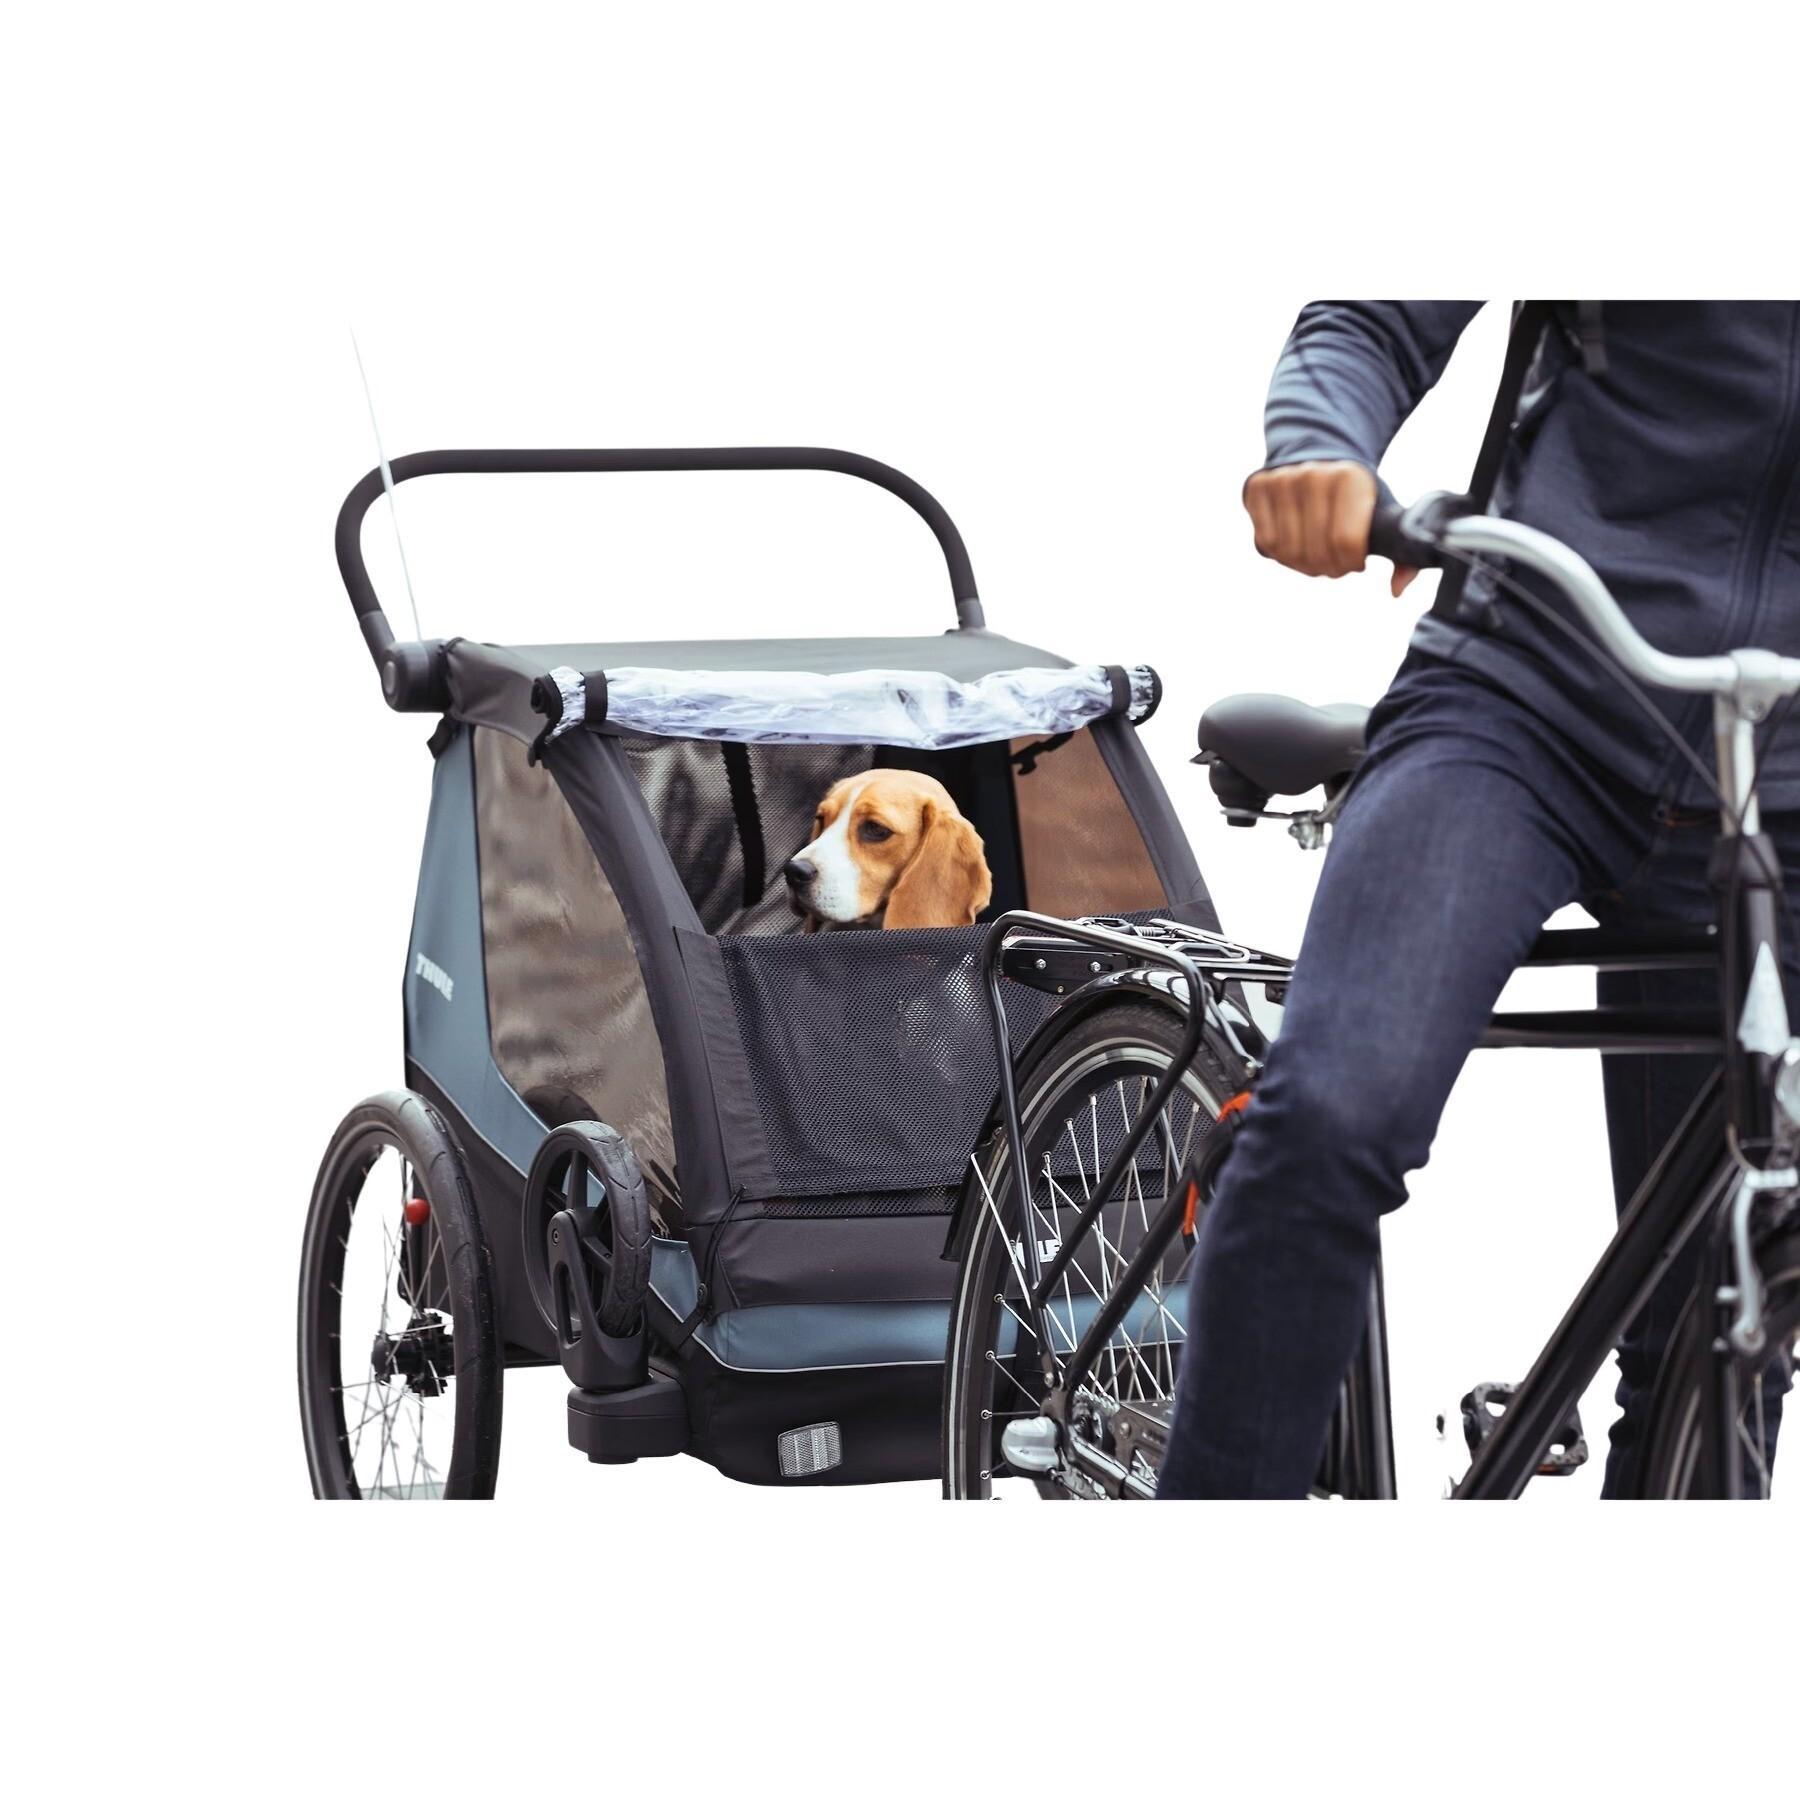 Bike trailer kit for dogs Thule Trailer